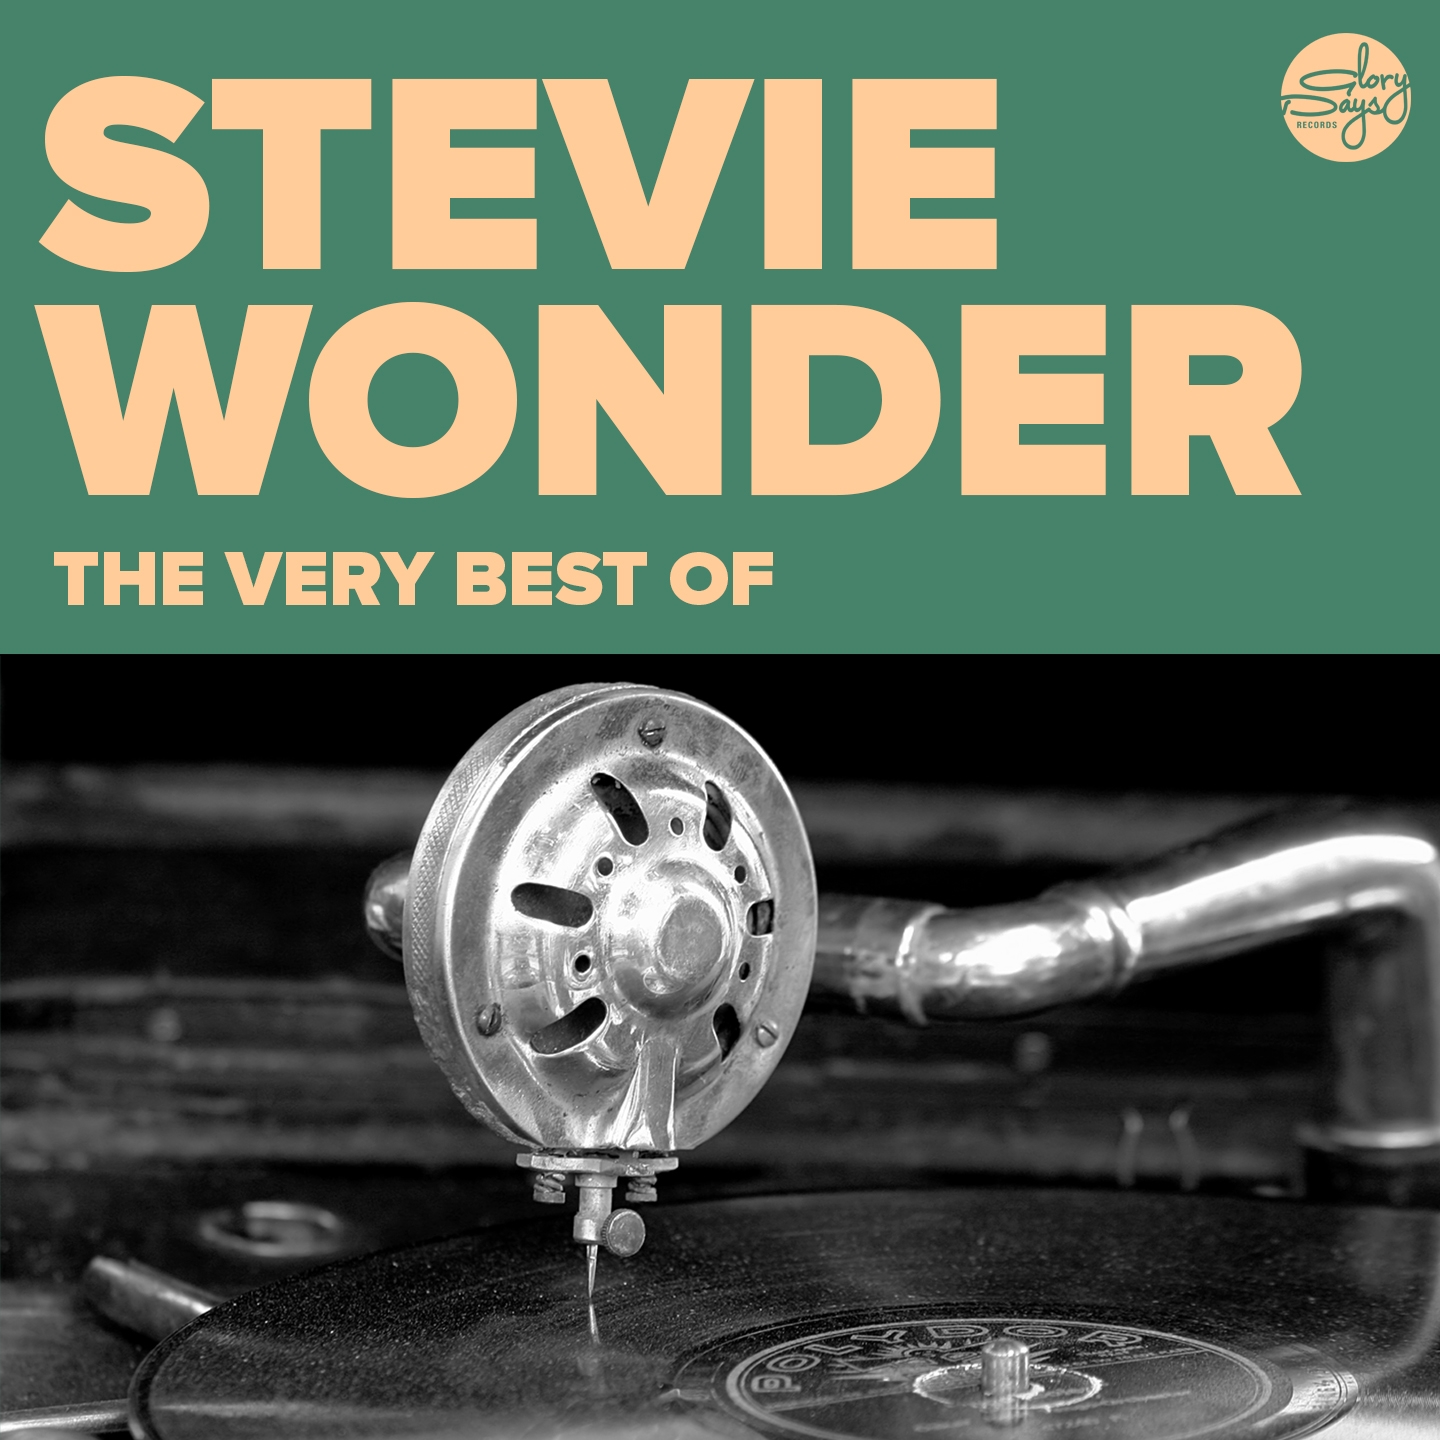 The Very Best Of (Stevie Wonder)